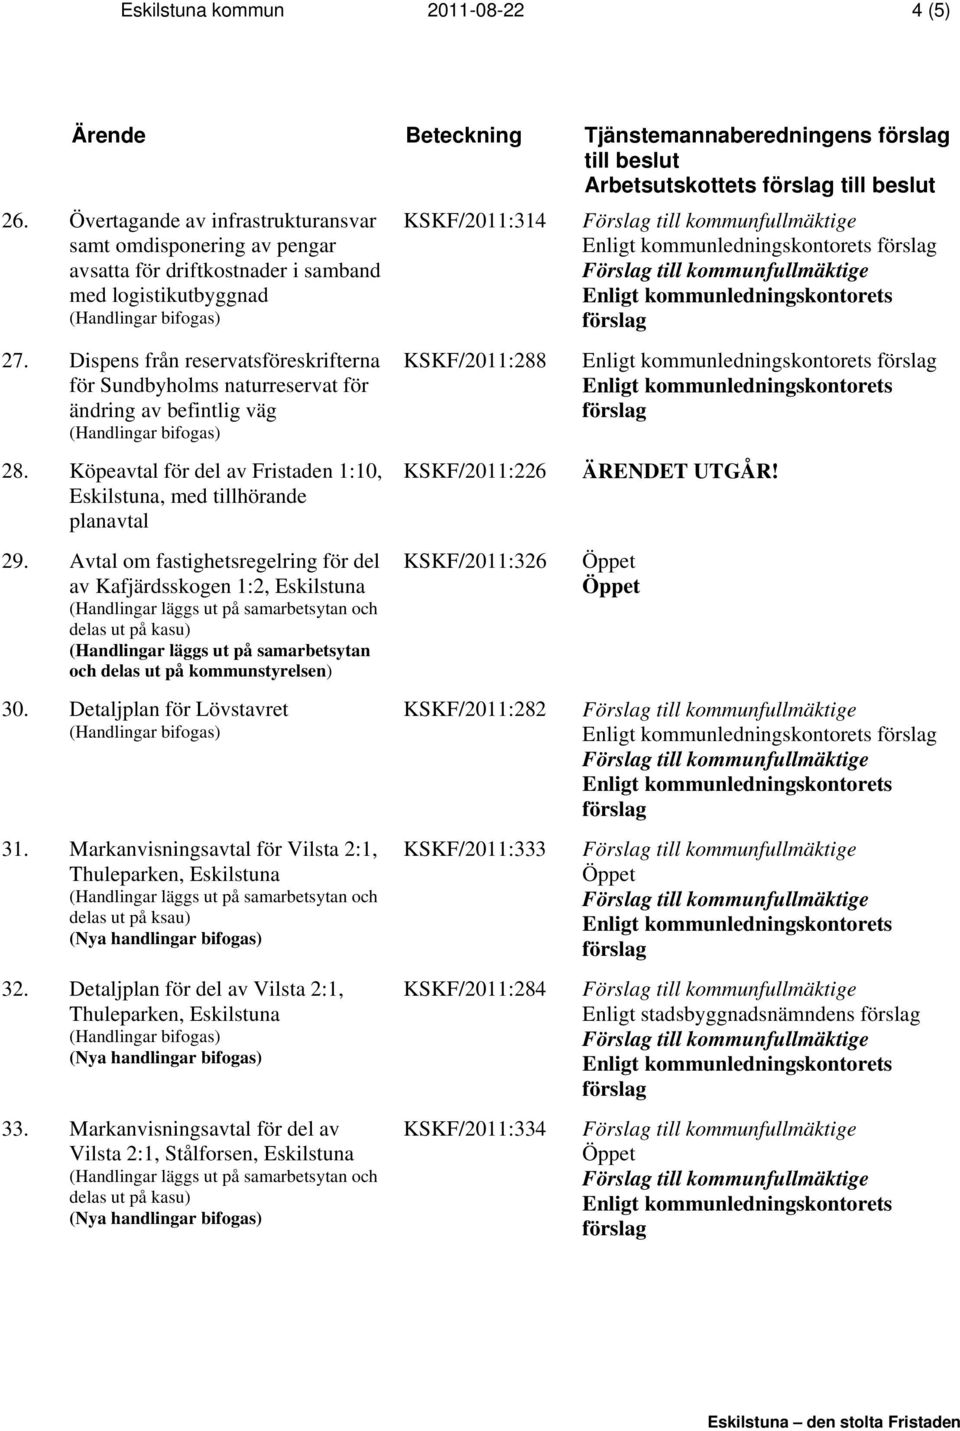 Dispens från reservatsföreskrifterna för Sundbyholms naturreservat för ändring av befintlig väg 28. Köpeavtal för del av Fristaden 1:10, Eskilstuna, med tillhörande planavtal 29.